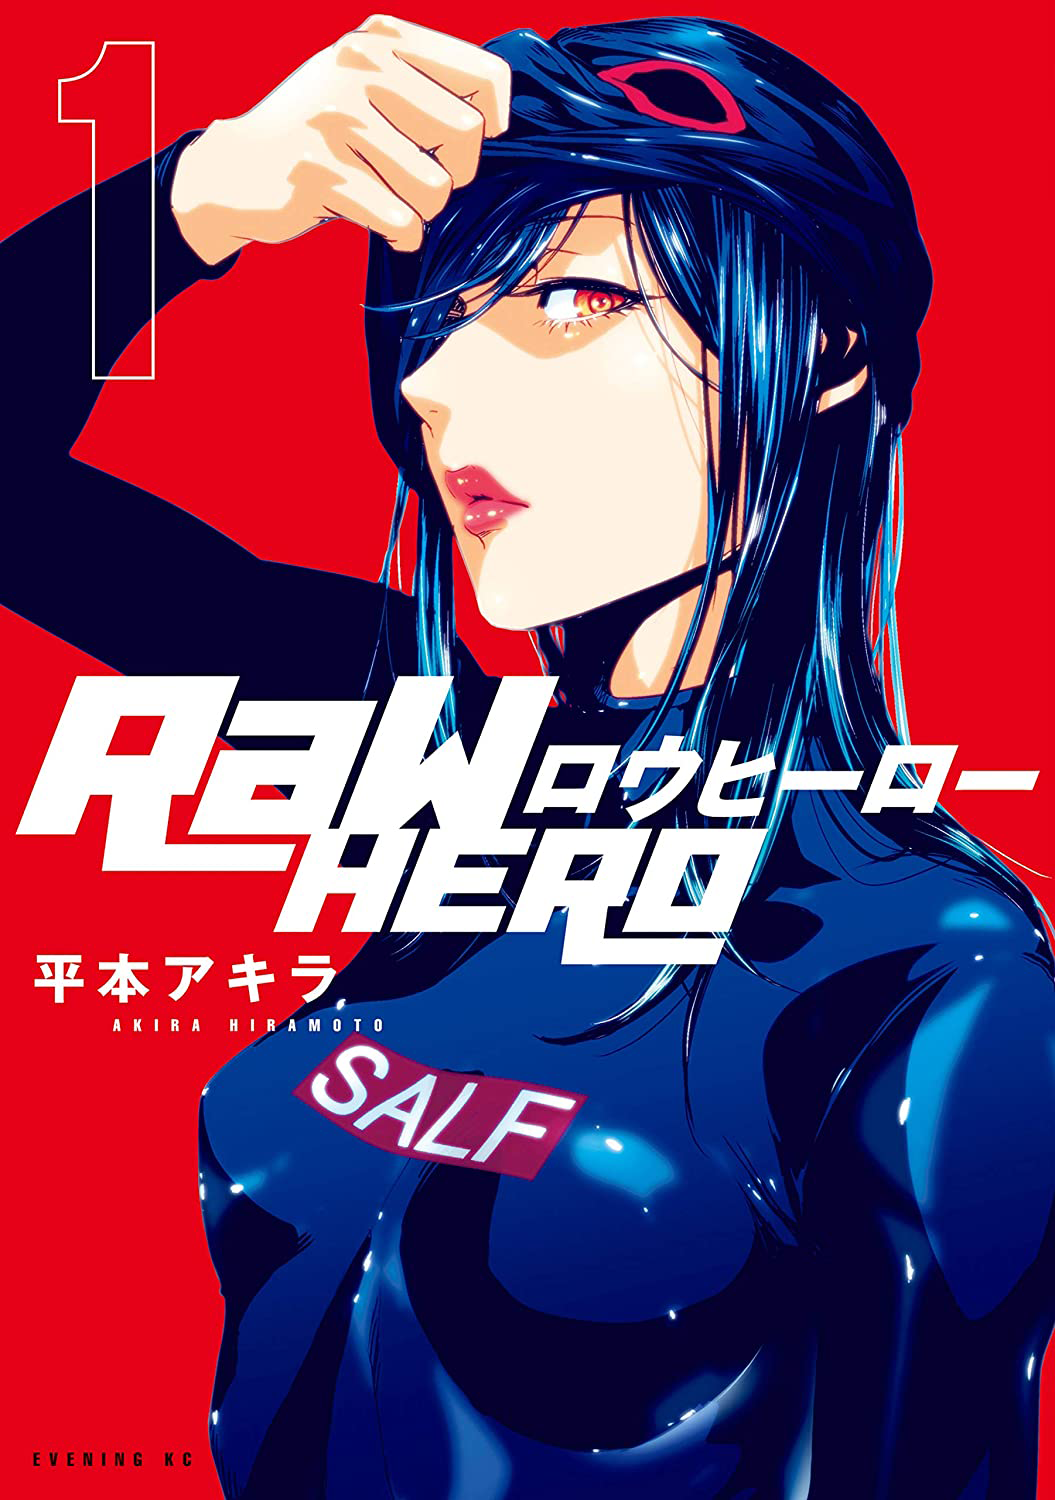 Raw Hero (manga) | RaW Hero Wiki | Fandom